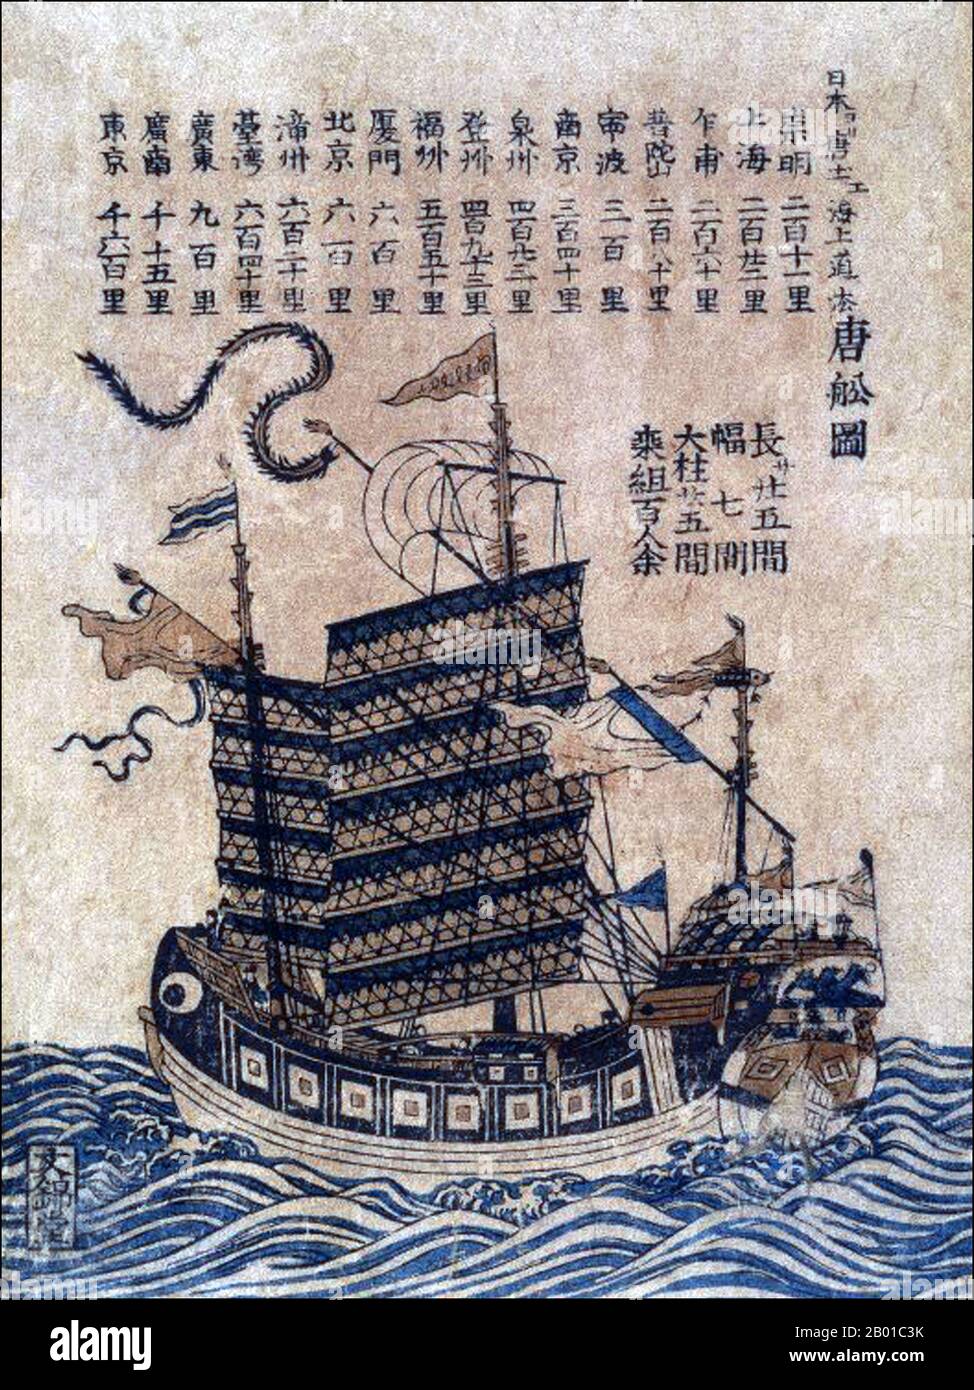 China: Ein Hochseeschrott (Tosen zu) mit Listen der Seeroute von China nach Japan. Holzschnitt, c. 1847-1853.. Ein Schrott ist ein altes chinesisches Segelschiff Design noch heute in Gebrauch. Dschunken wurden während der Han-Dynastie (206 v. Chr.–220 n. Chr.) entwickelt und wurden bereits im 2.. Jahrhundert n. Chr. als Seeschiffe eingesetzt. Sie entwickelten sich in den späteren Dynastien und wurden in ganz Asien für ausgedehnte Ozeanreisen genutzt. Sie wurden in geringerer Zahl in ganz Südostasien und Indien gefunden, vor allem aber in China, vielleicht am bekanntesten in Hongkong. Stockfoto